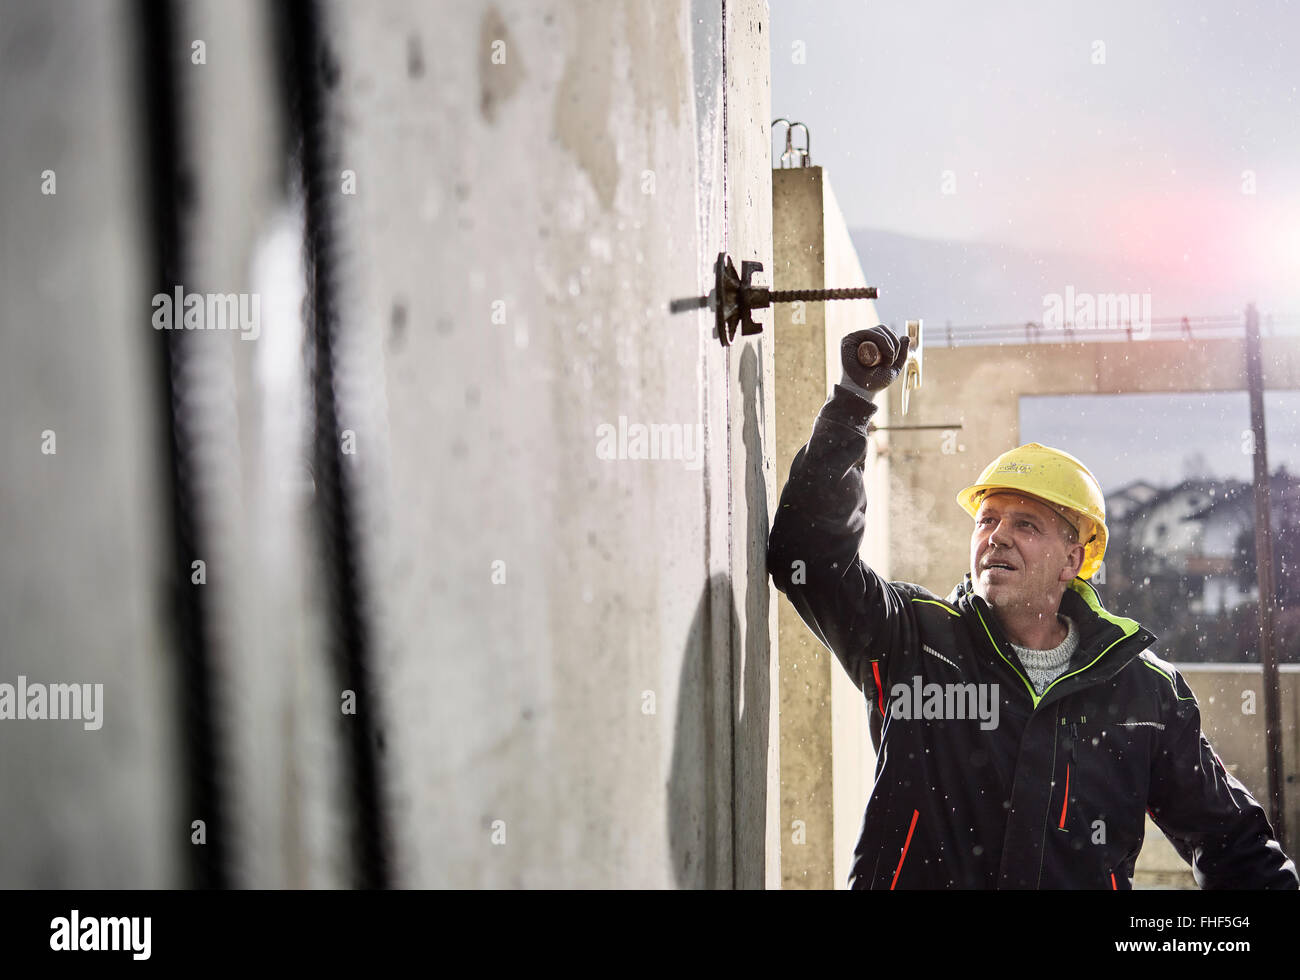 Bauarbeiter am Bau Website, Bau, Abbau der Schalung, Innsbruck Land, Tirol, Österreich Stockfoto